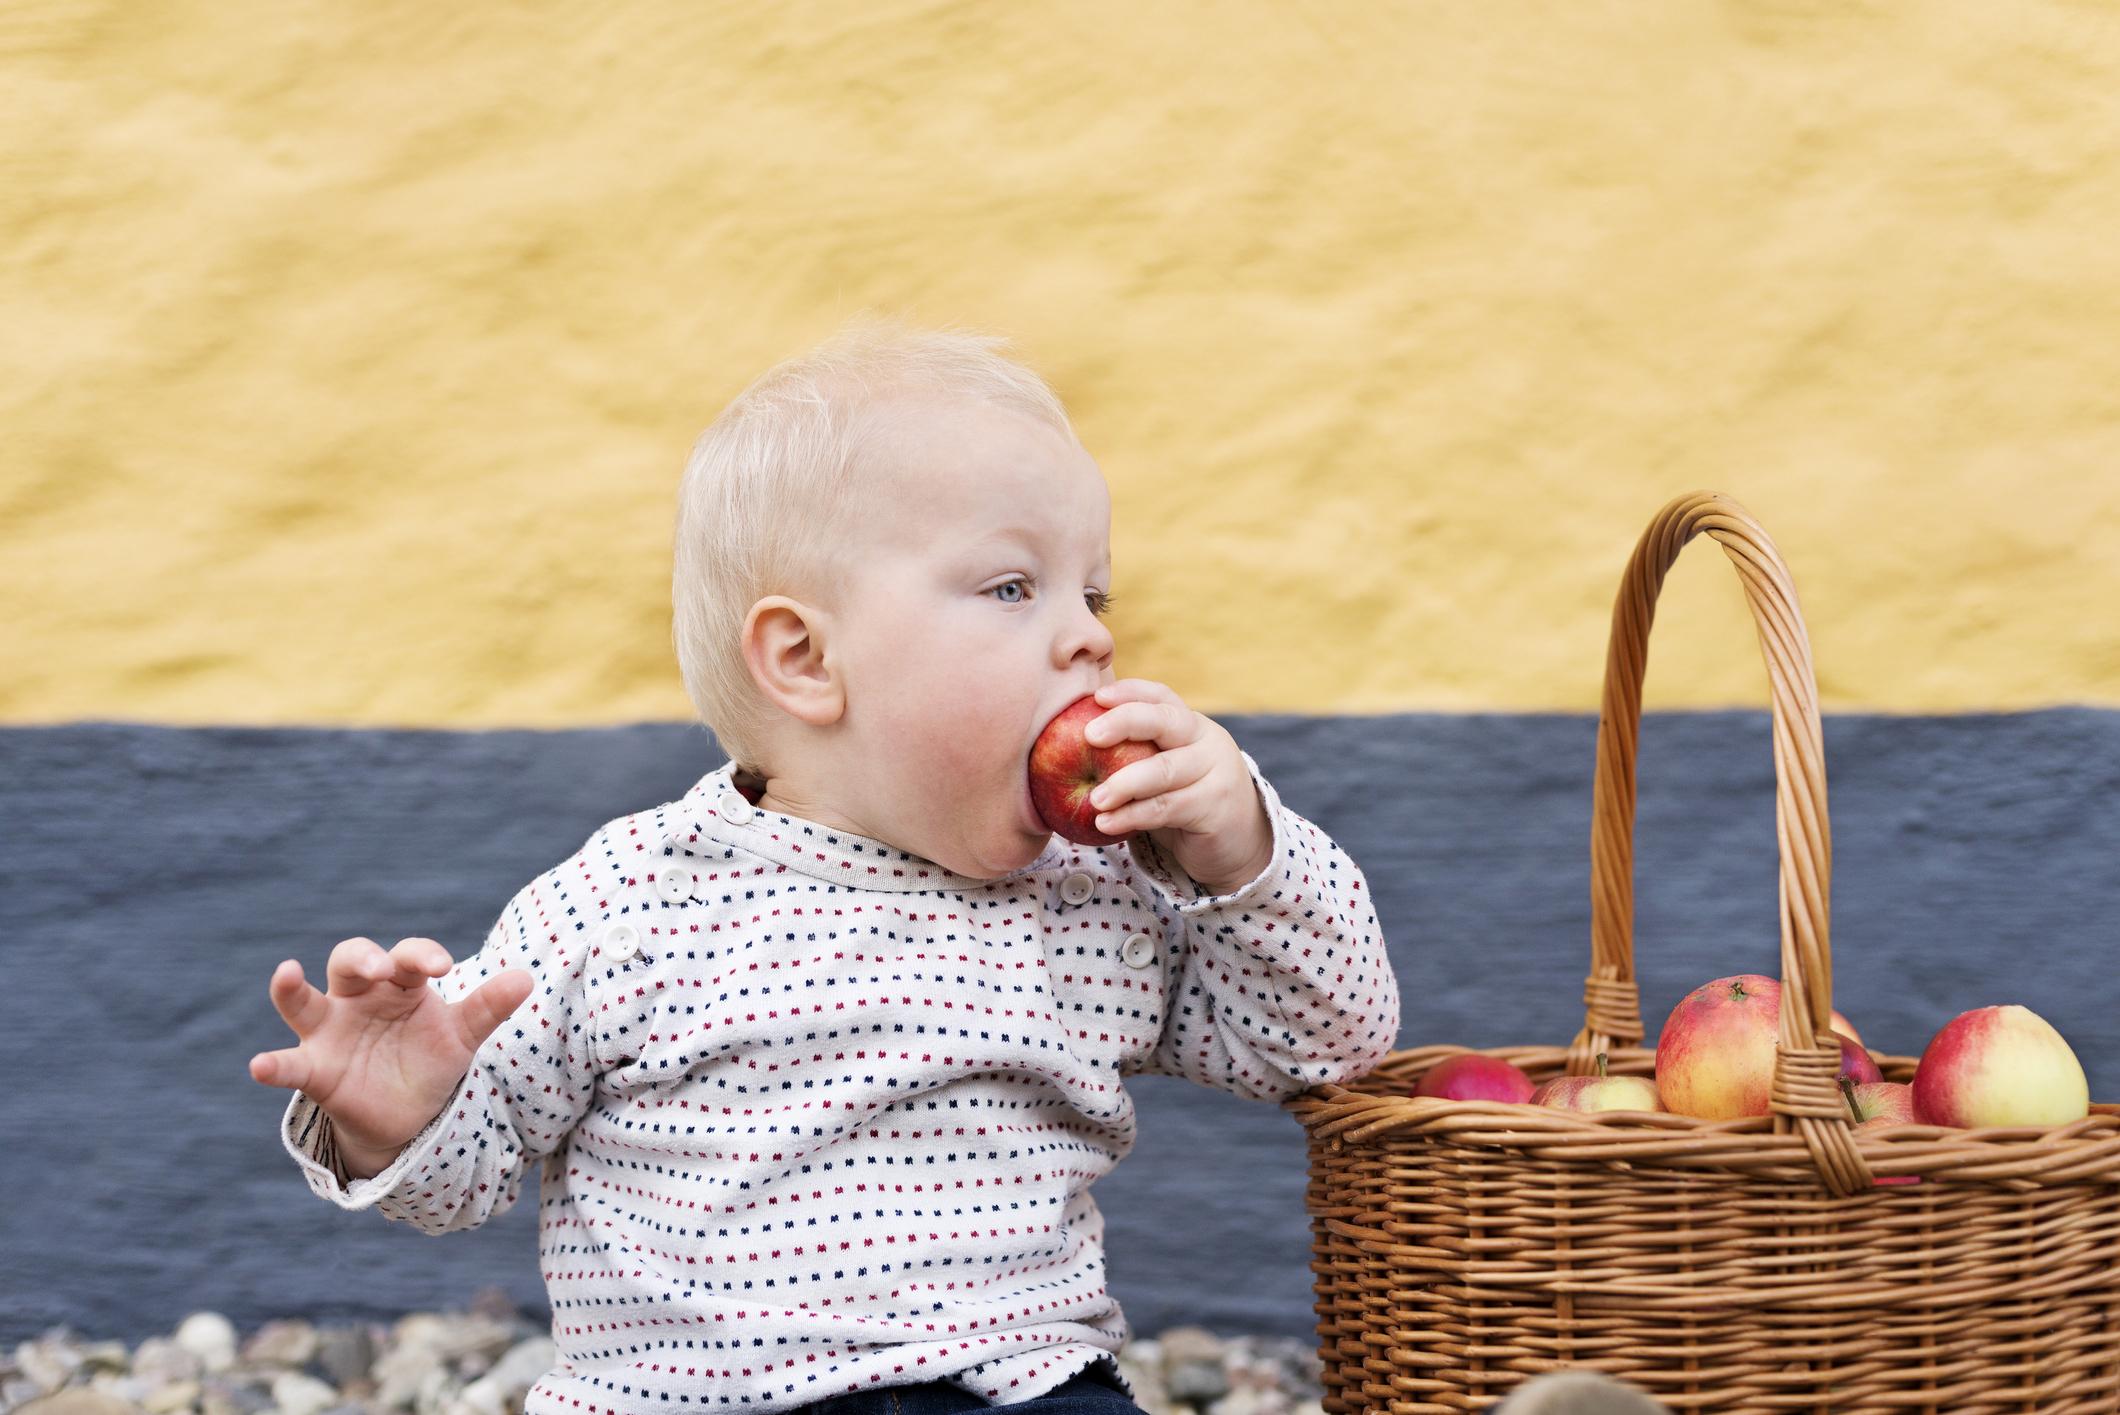 Les Pommes Quand Et Comment Integrer Ce Fruit A L Alimentation De Bebe Femmes D Aujourd Hui Mamans